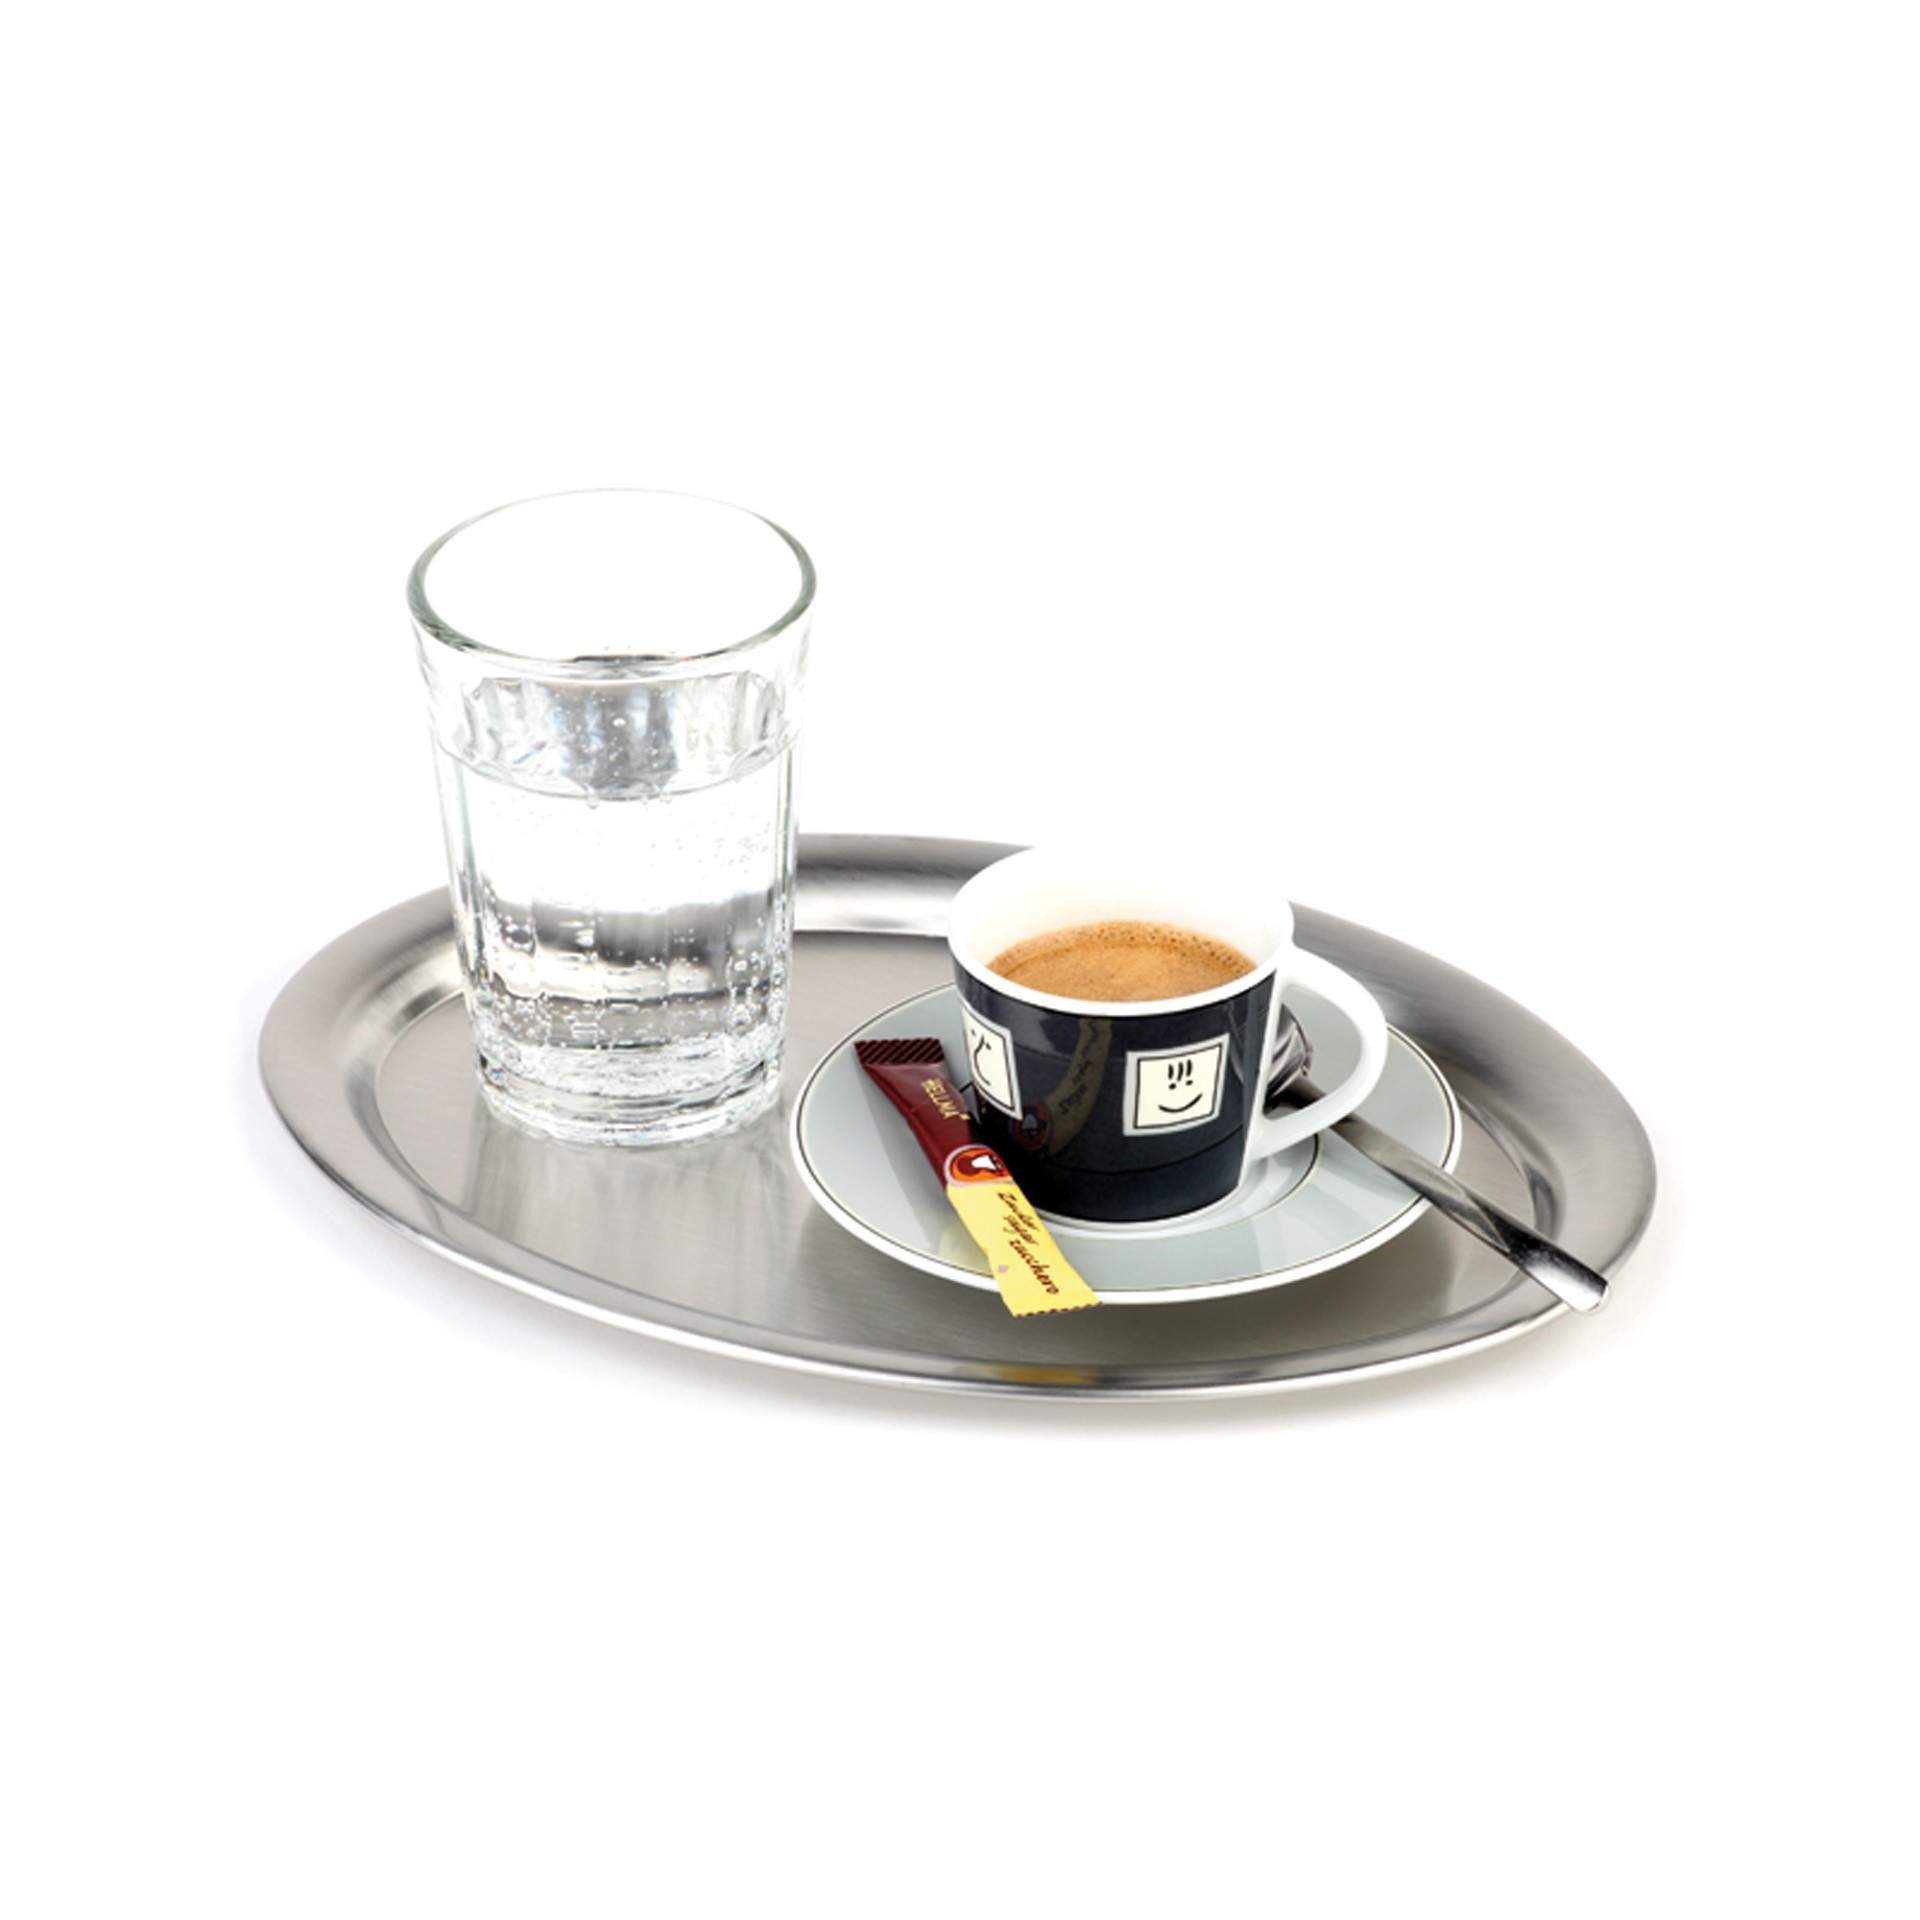 Serviertablett - für Zucker und Sahne - Serie Kaffeehaus - matt poliert - oval - Abm. 20 x 14 x 1 cm - Edelstahl - 30111-B